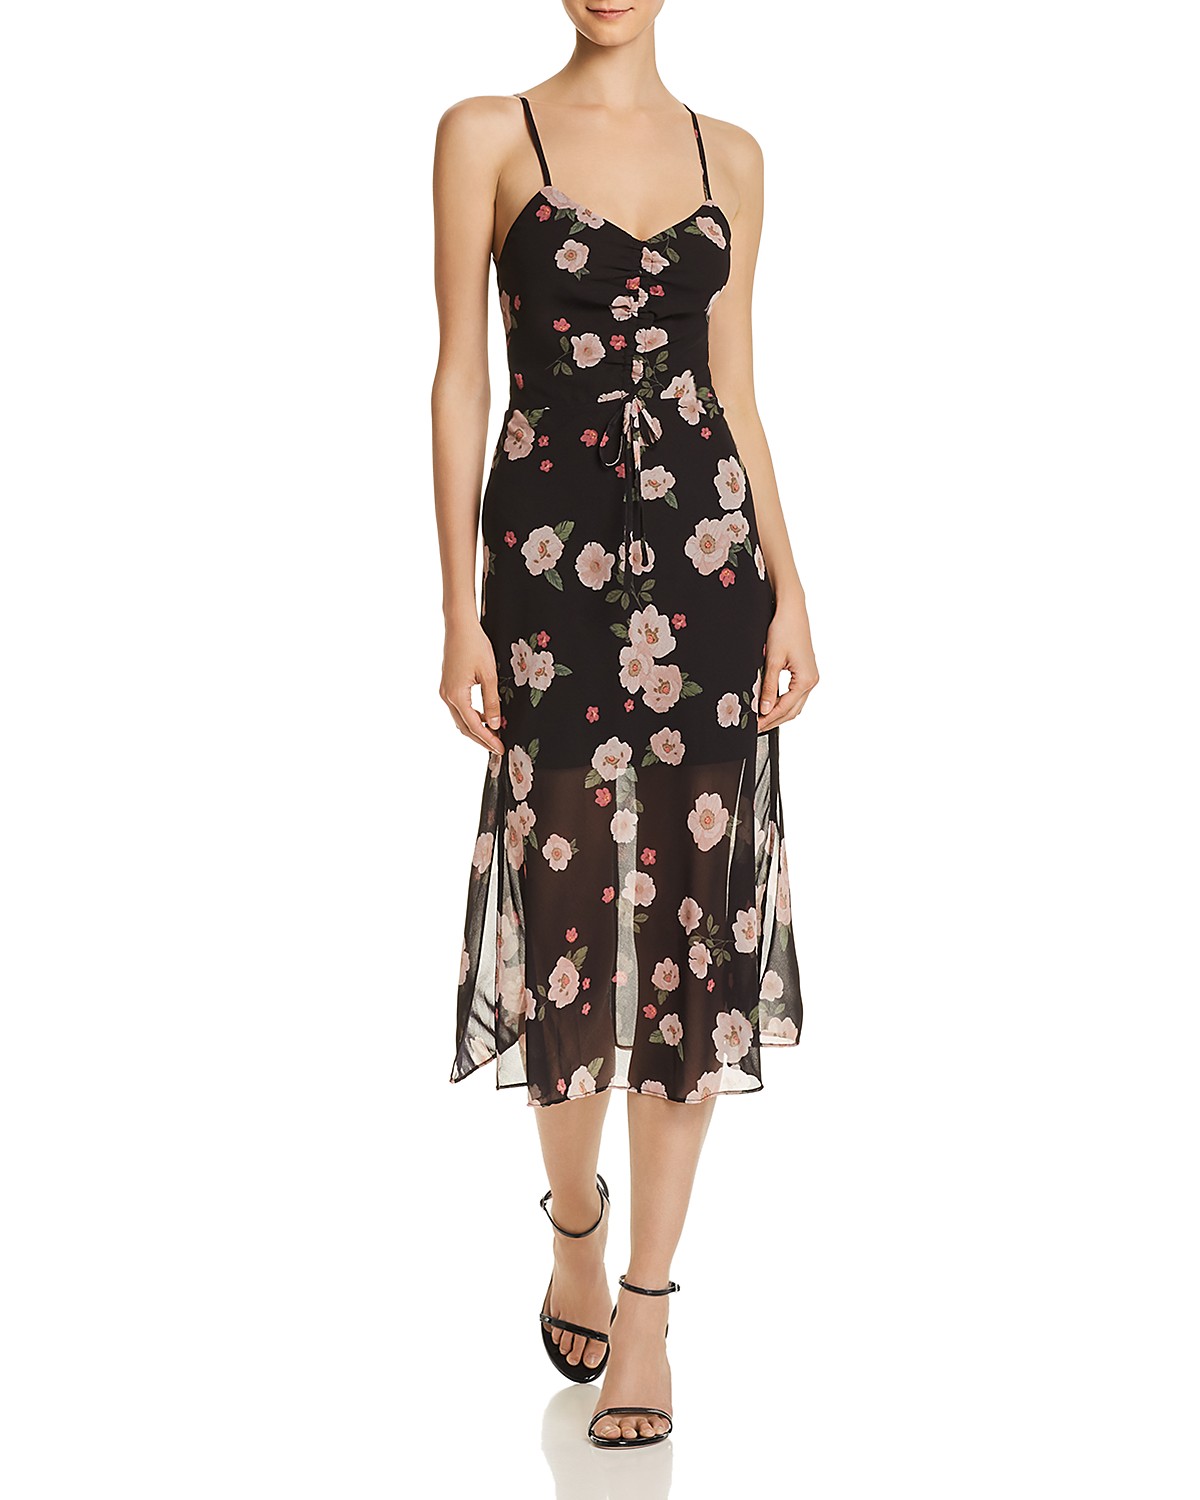 Hailey Baldwin Wears Floral Amen Dress in NYC: Similar Styles